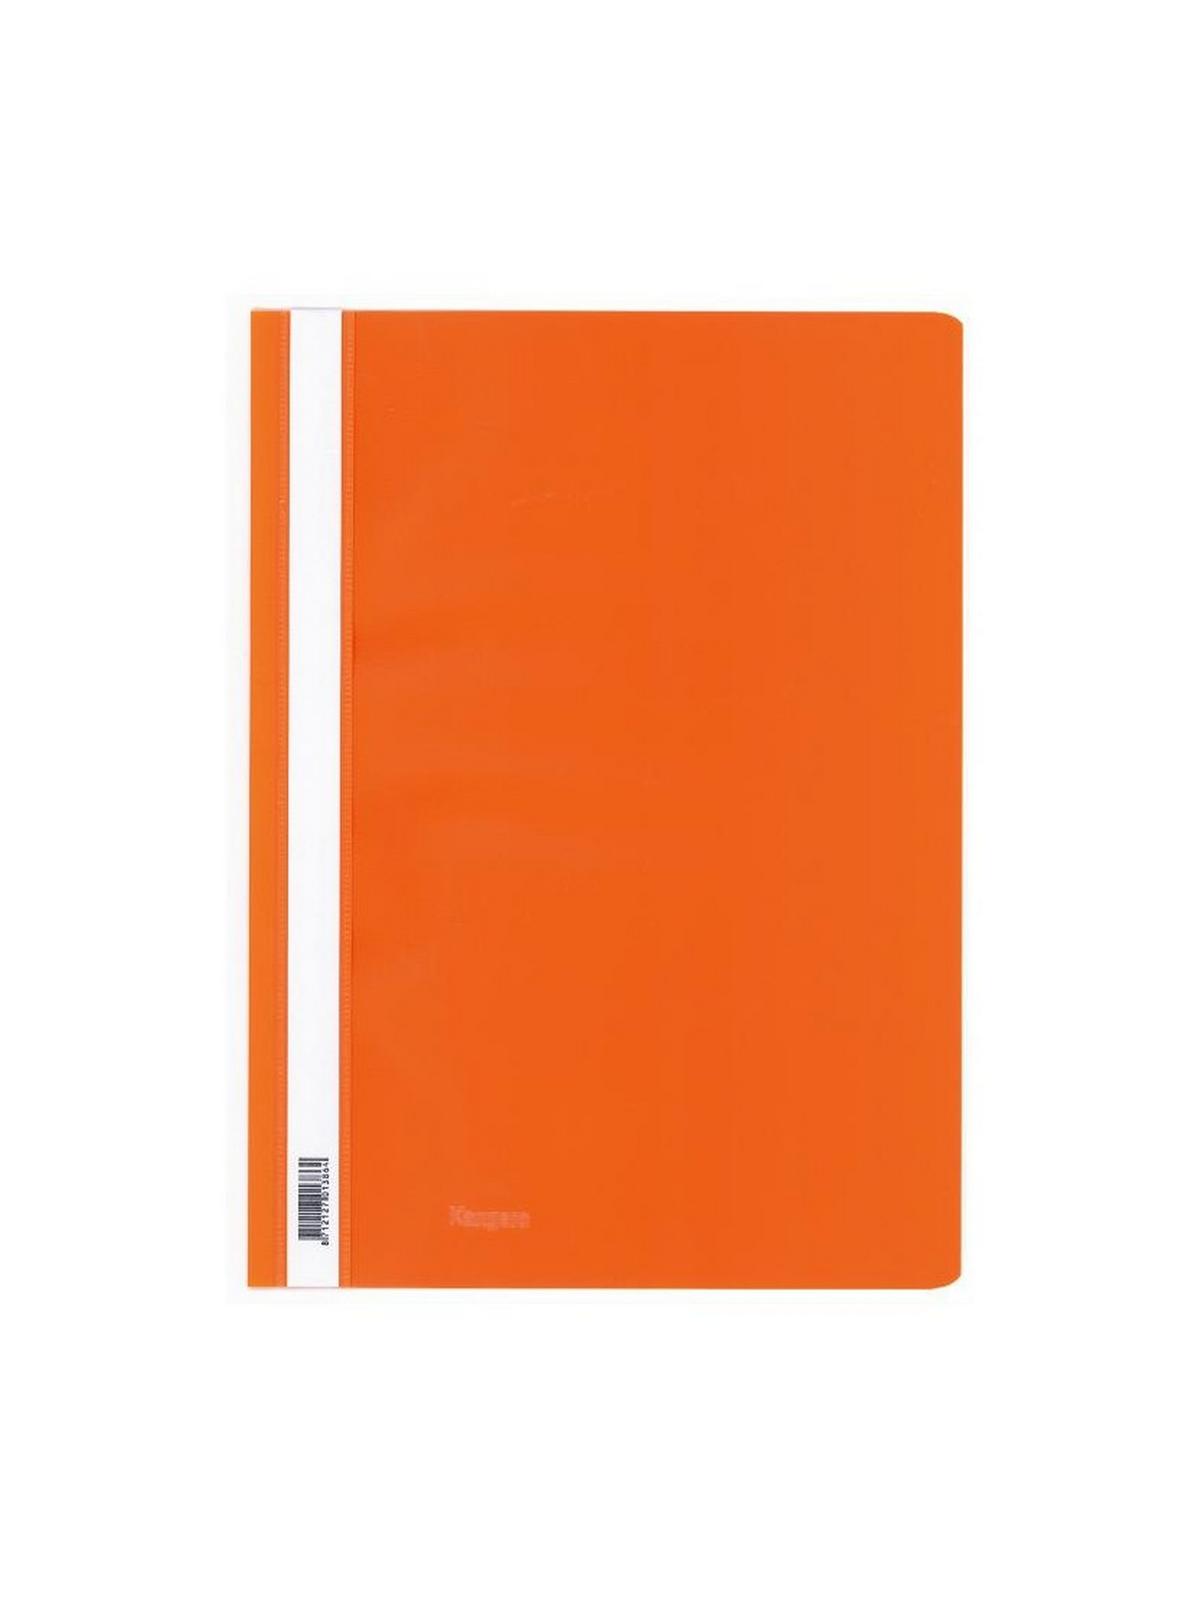 Ντοσιέ πλαστικο με έλασμα pp (Flat Files) πορτοκαλί